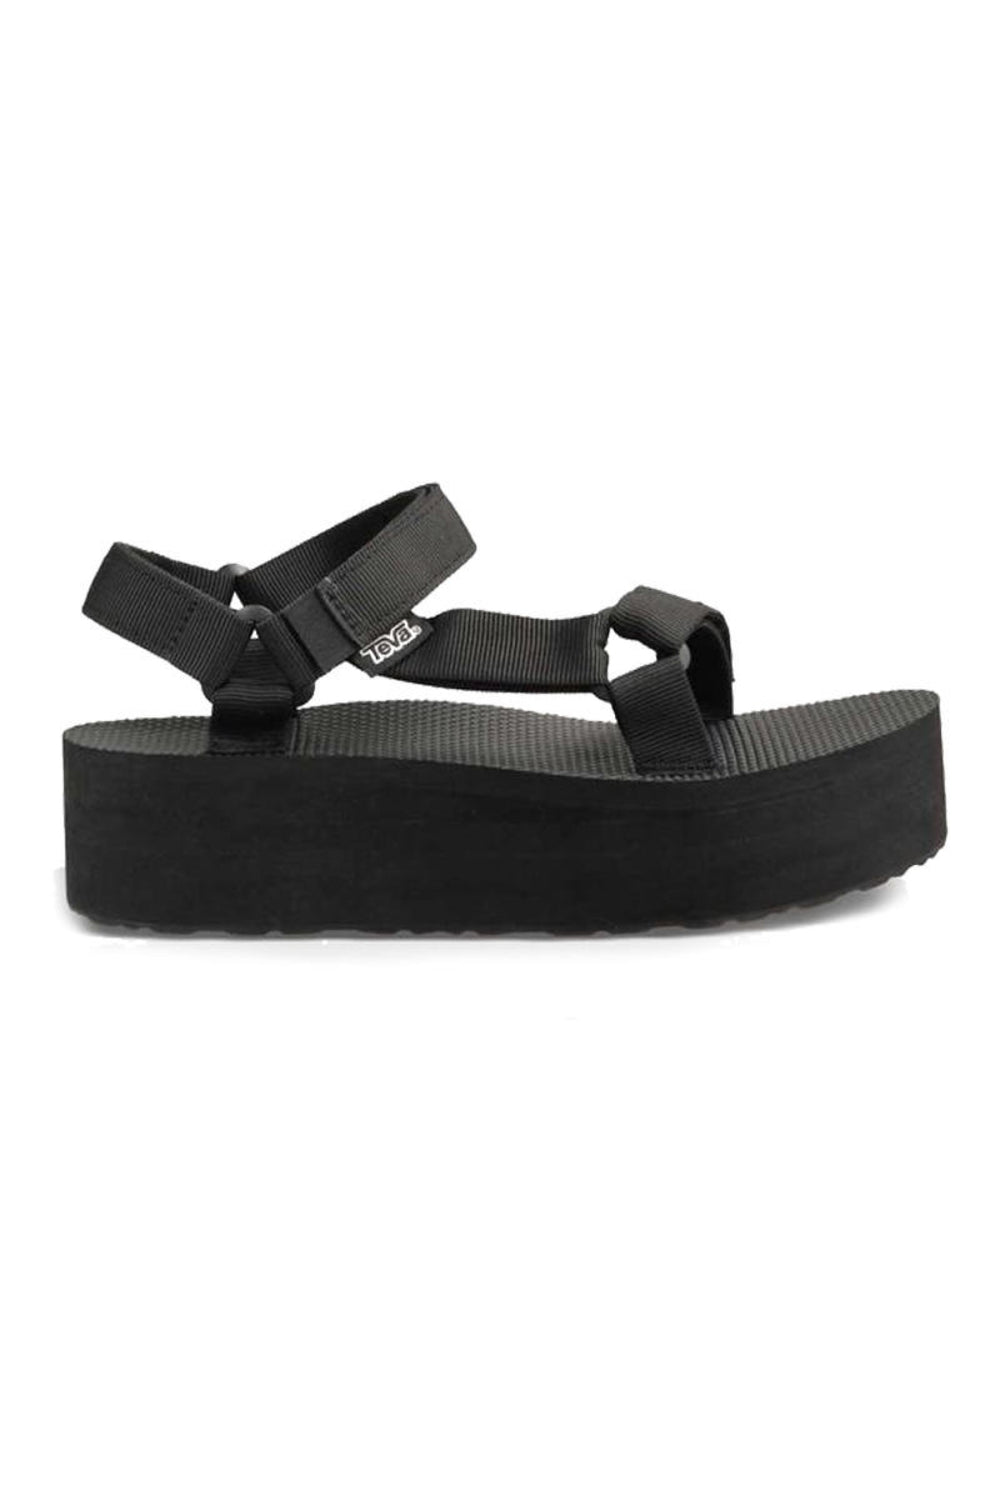 Black Flatform Sandal